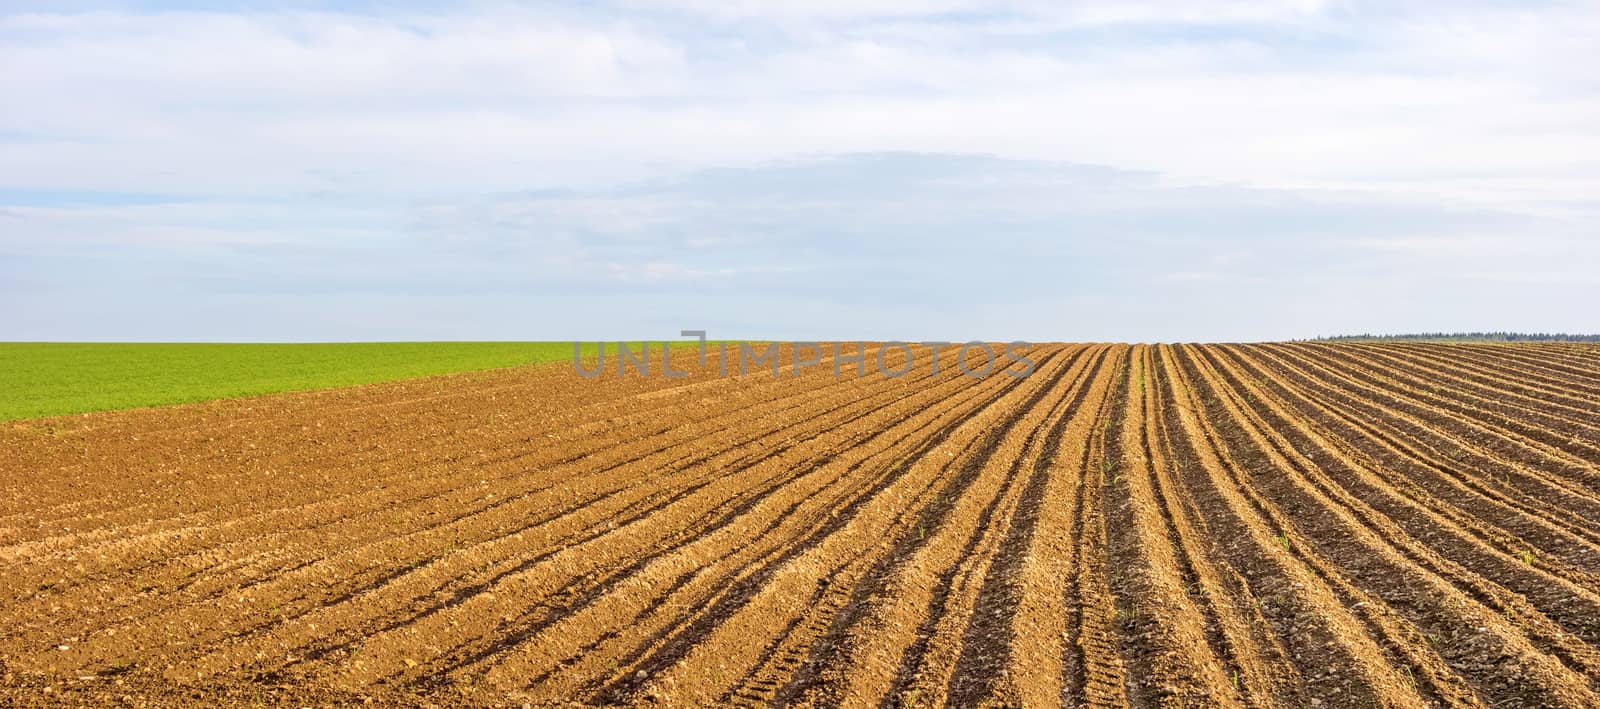 Farmland panorama - brown field by aldorado